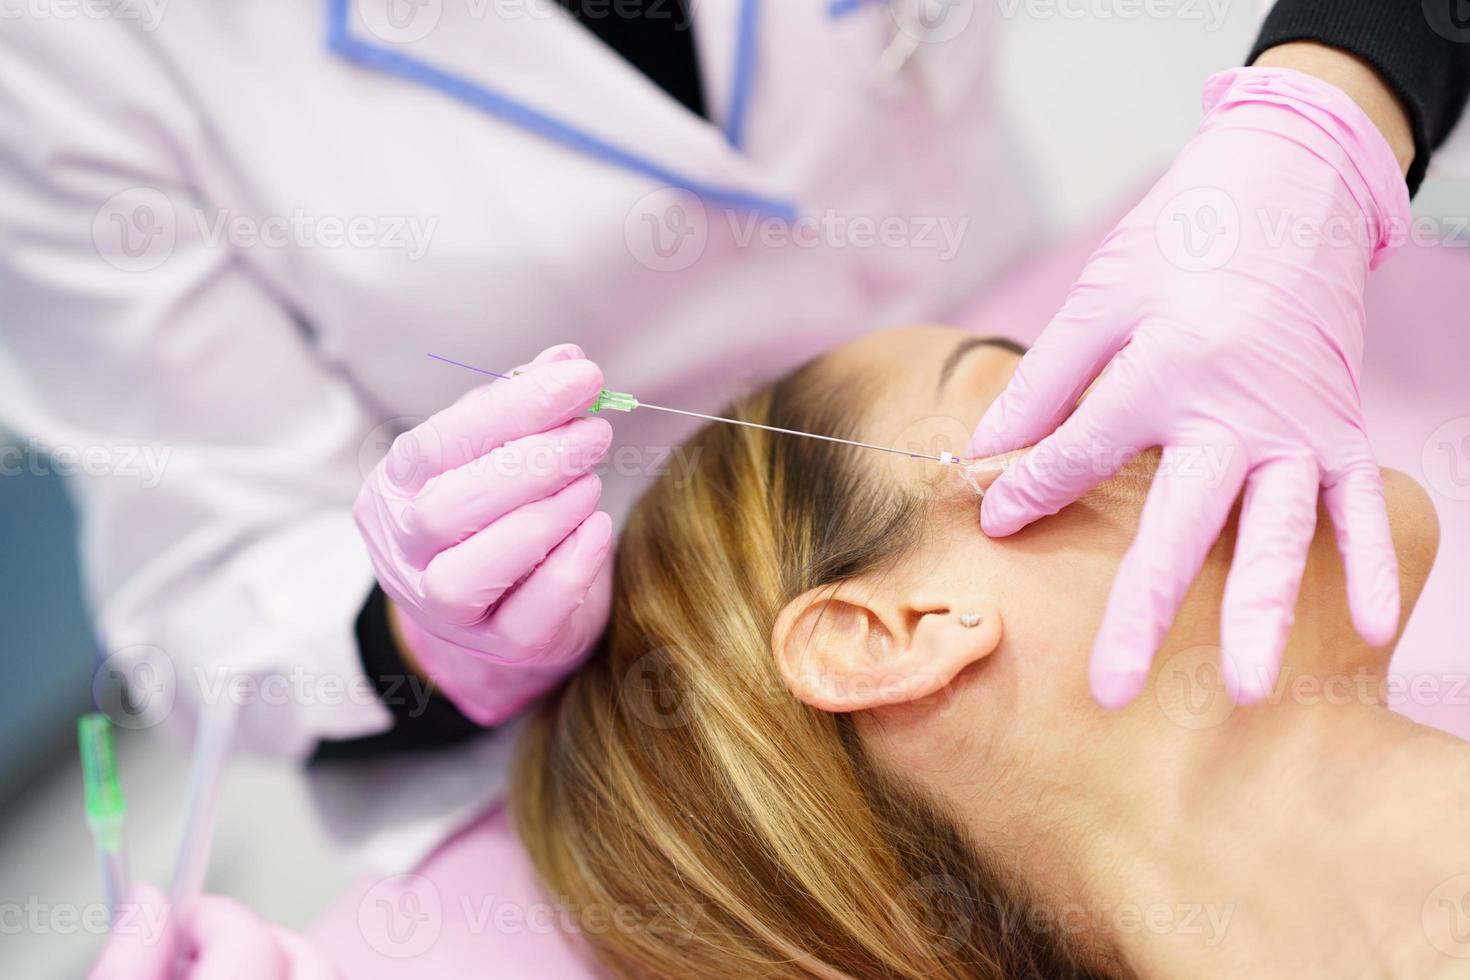 läkare injicerar pdo suture behandlingstrådar i ansiktet på en kvinna. foto